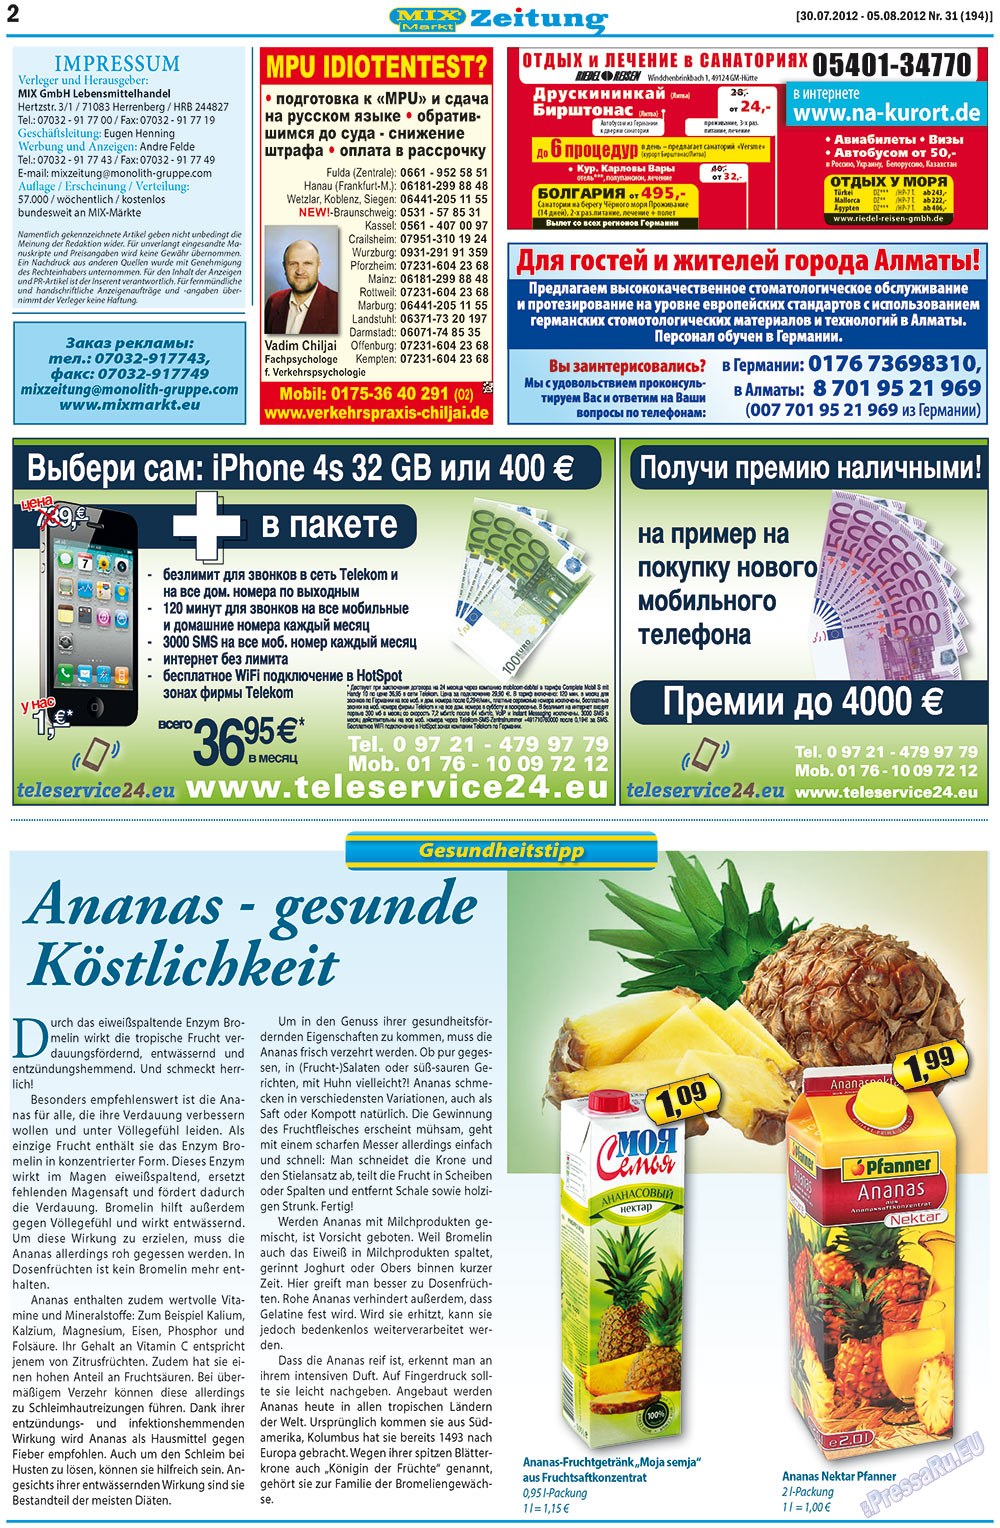 MIX-Markt Zeitung, газета. 2012 №31 стр.2